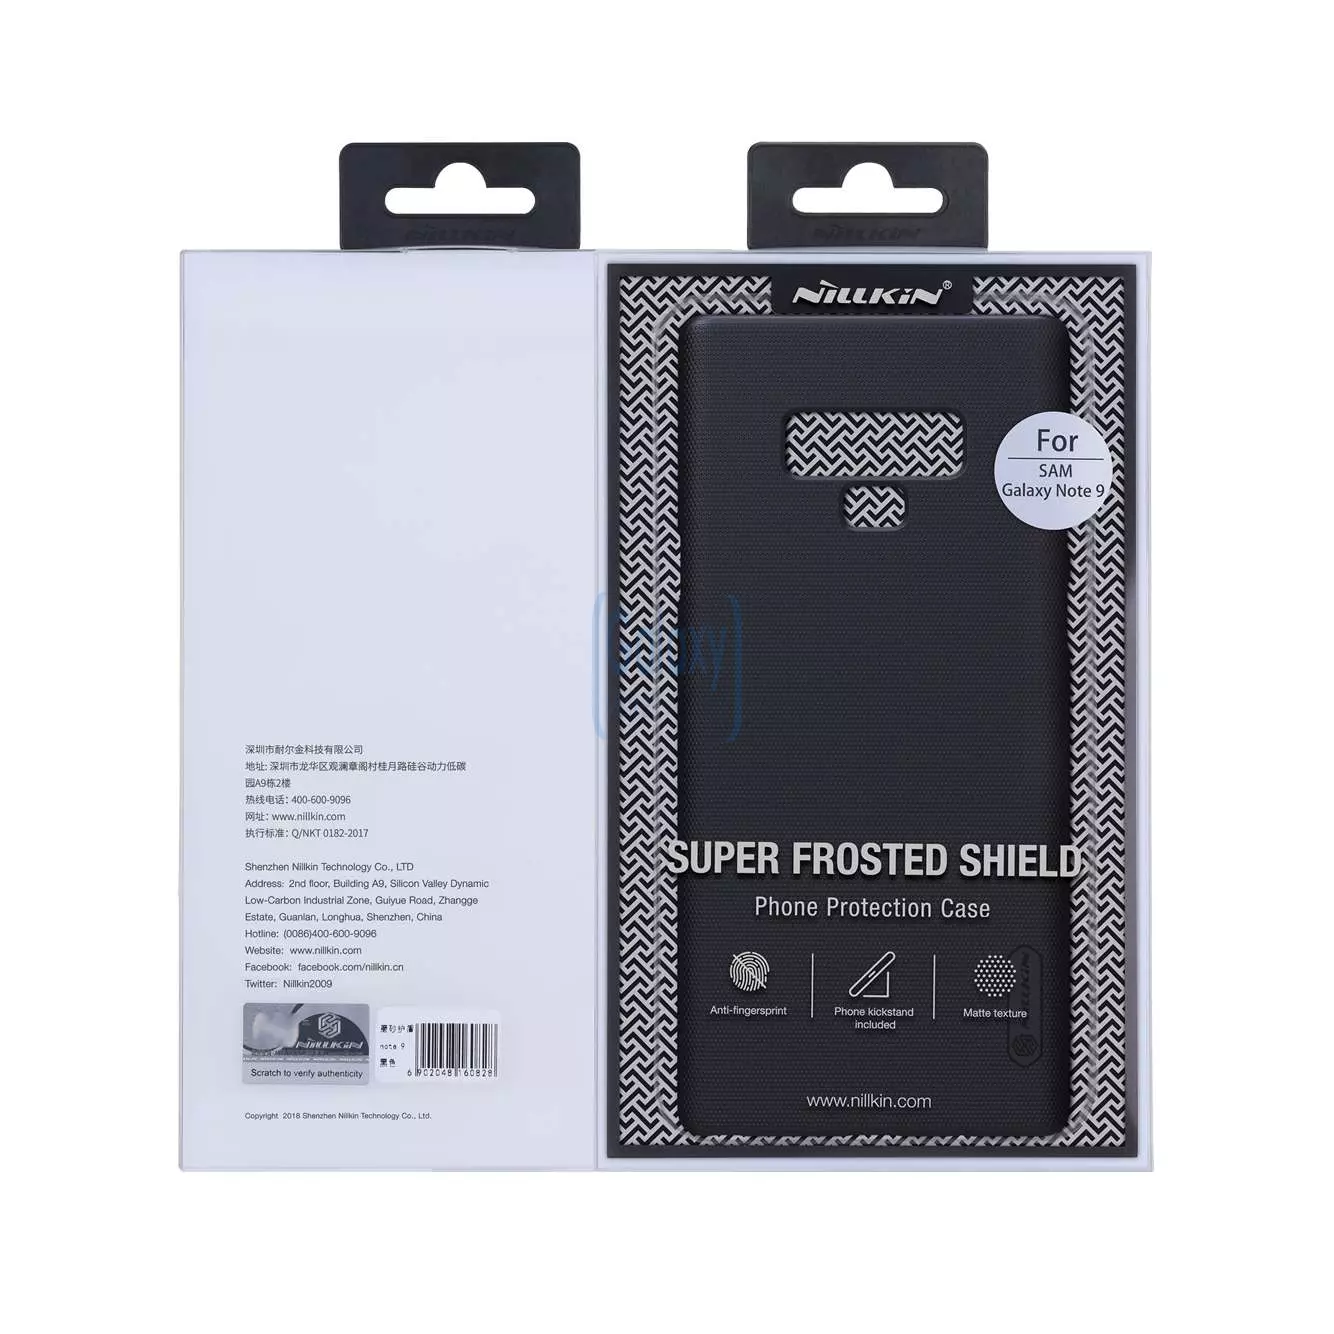 Чехол бампер для Samsung Galaxy A02s (US) Nillkin Super Frosted Shield White (Белый)